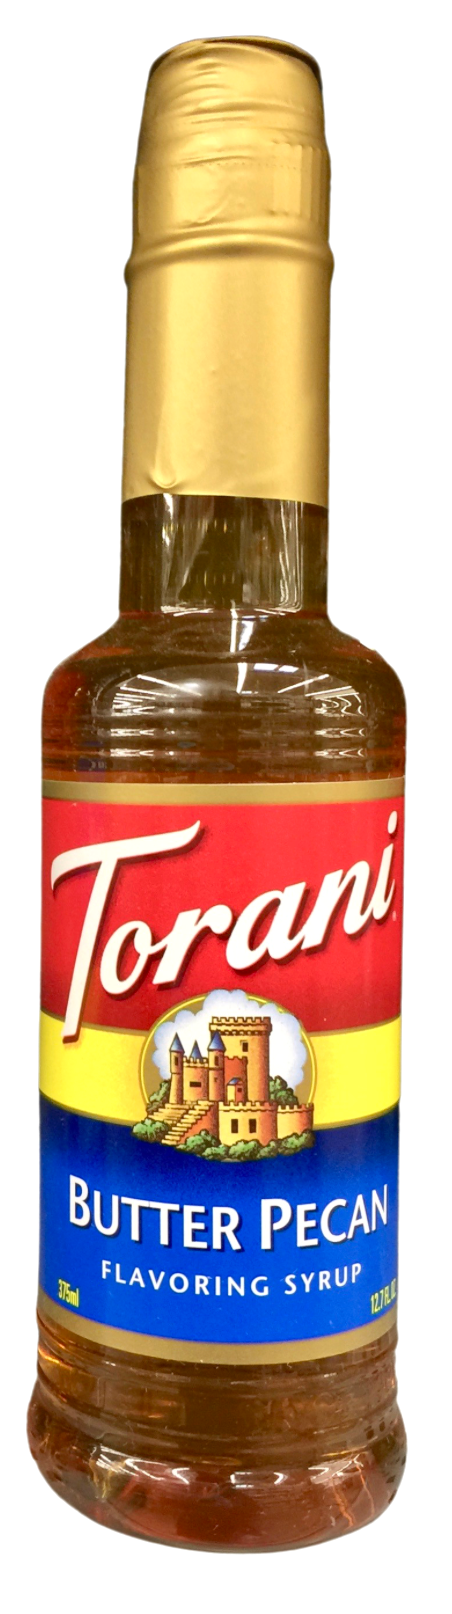 토라니 Torani 버터피칸 시럽 375ml